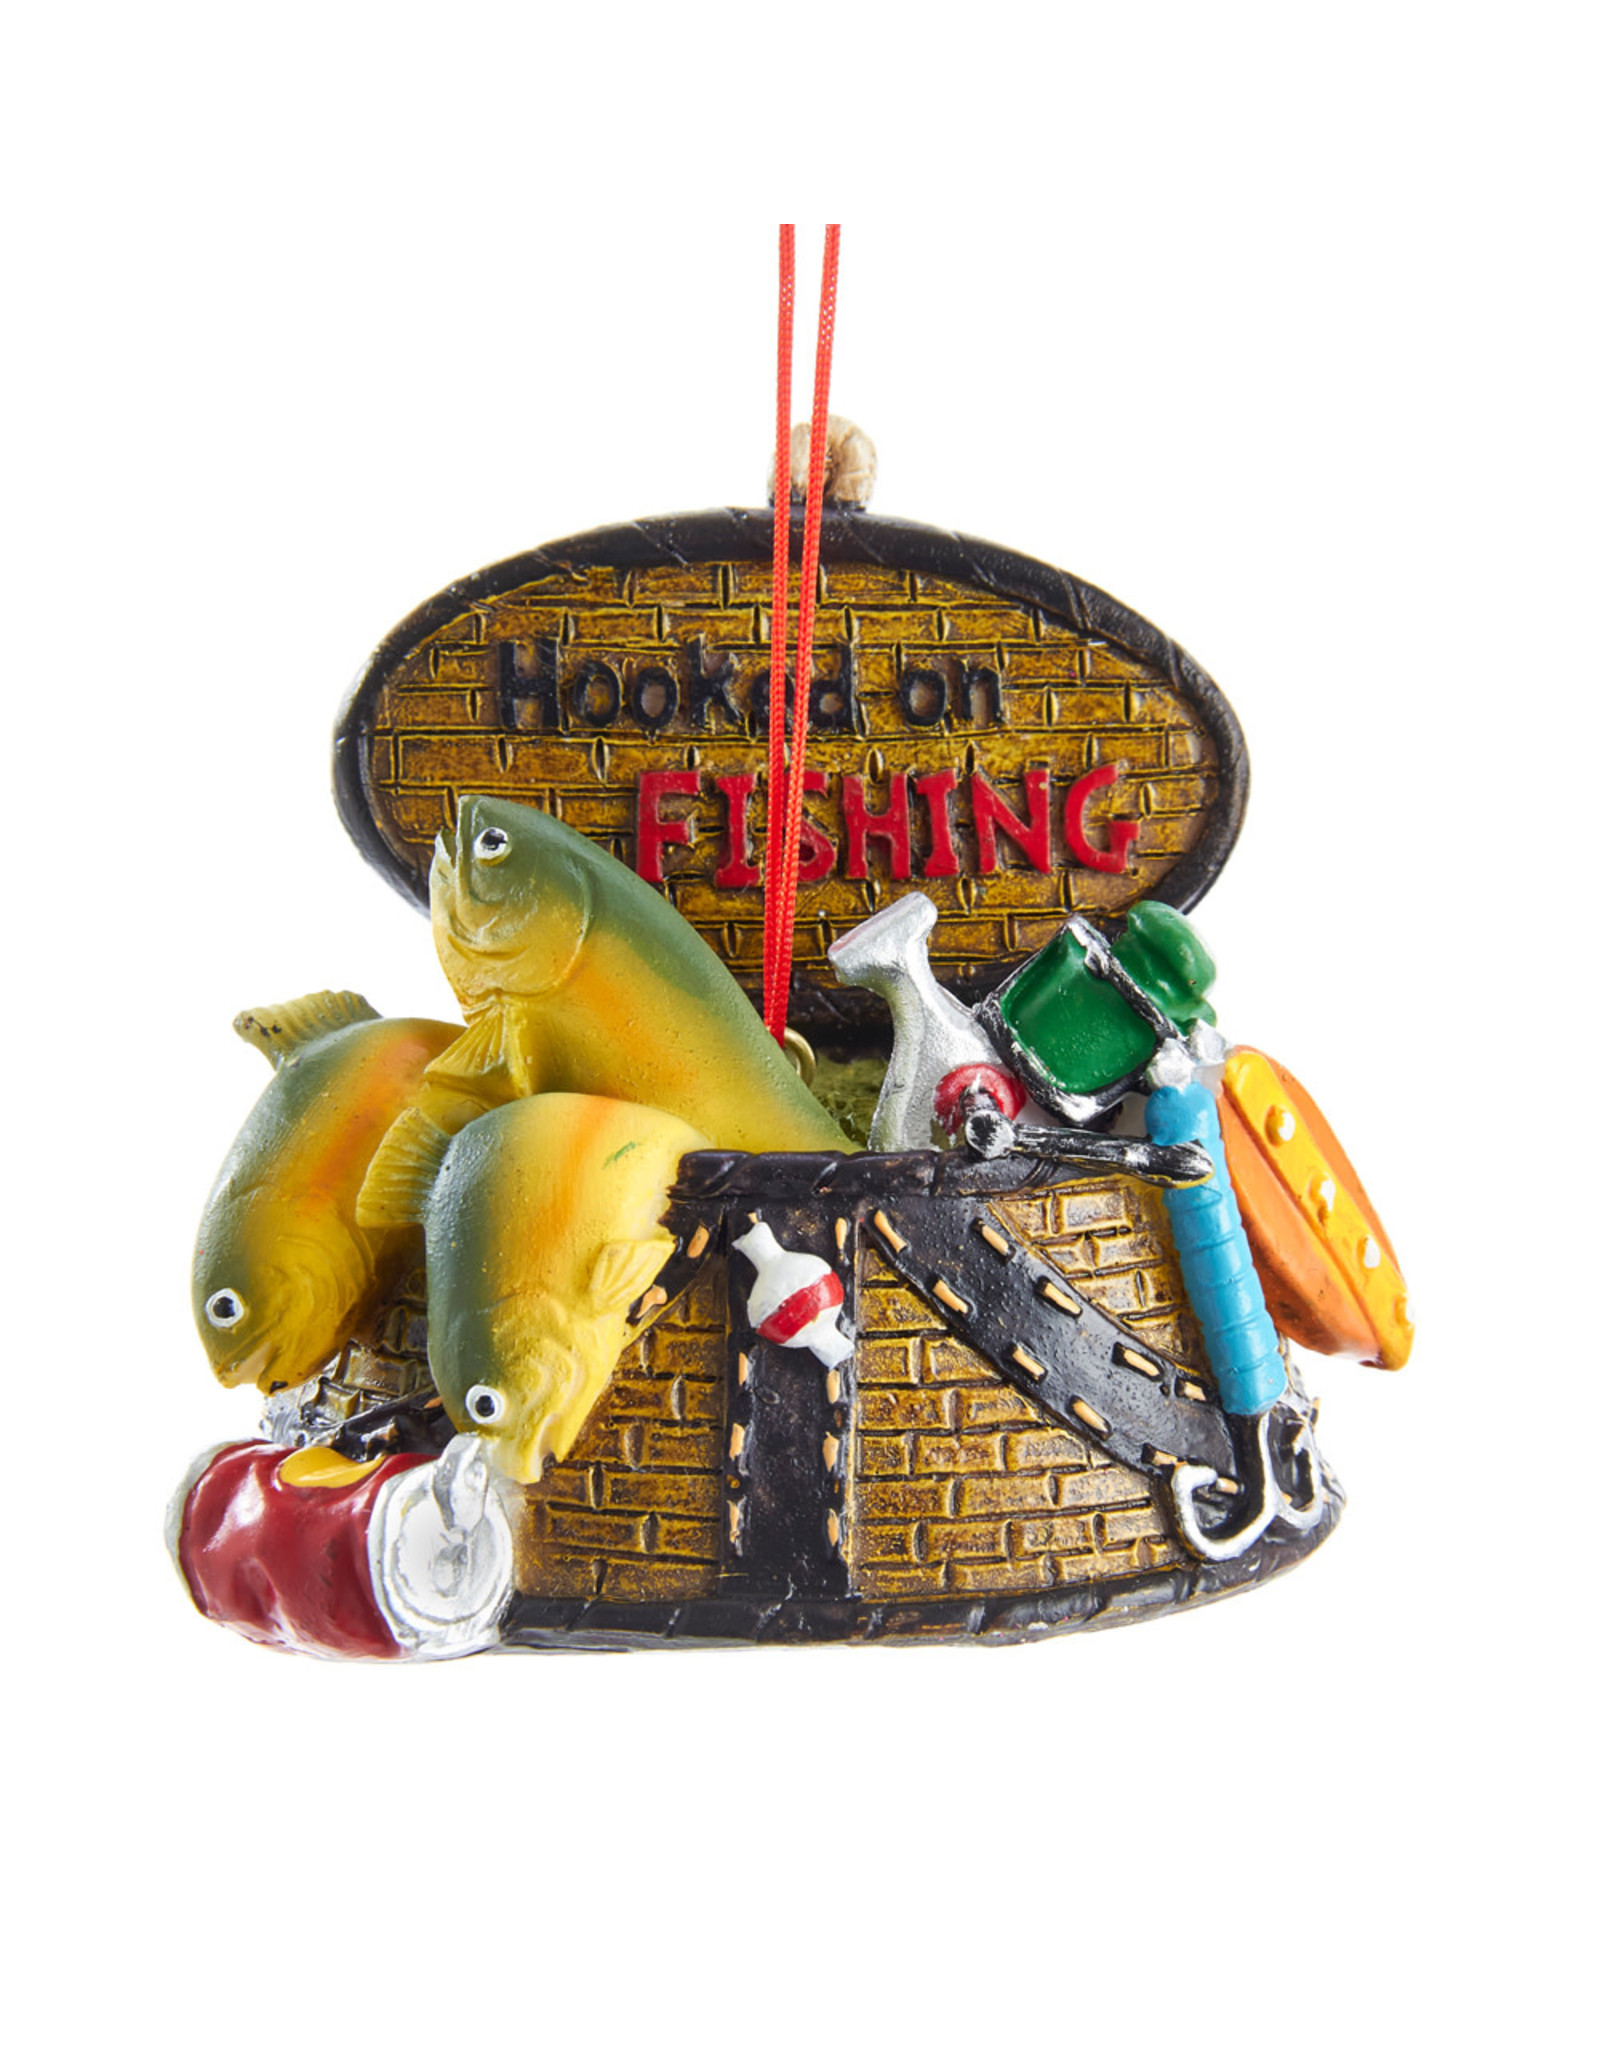 Kurt Adler Hooked On Fishing Basket Ornament 3 Inch